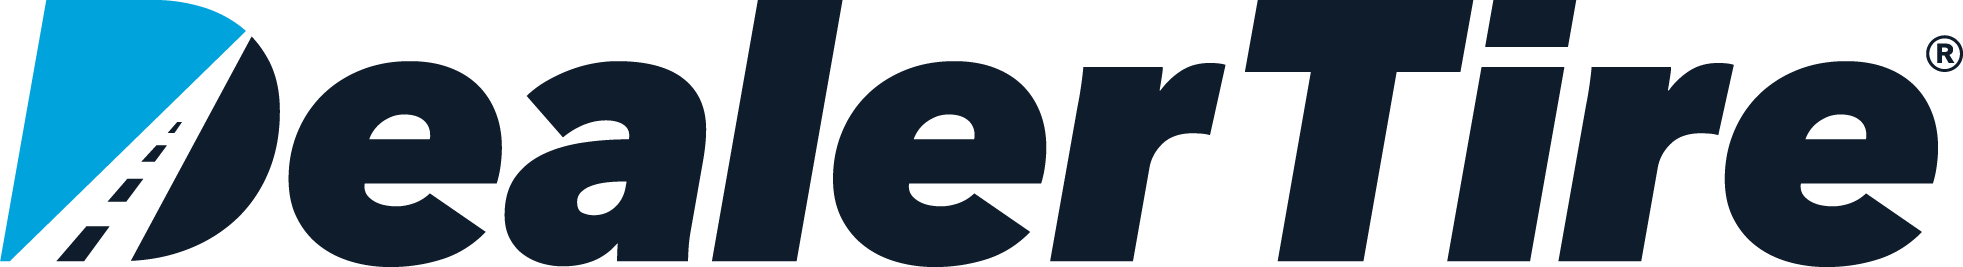 Dealer Tire logo (1)